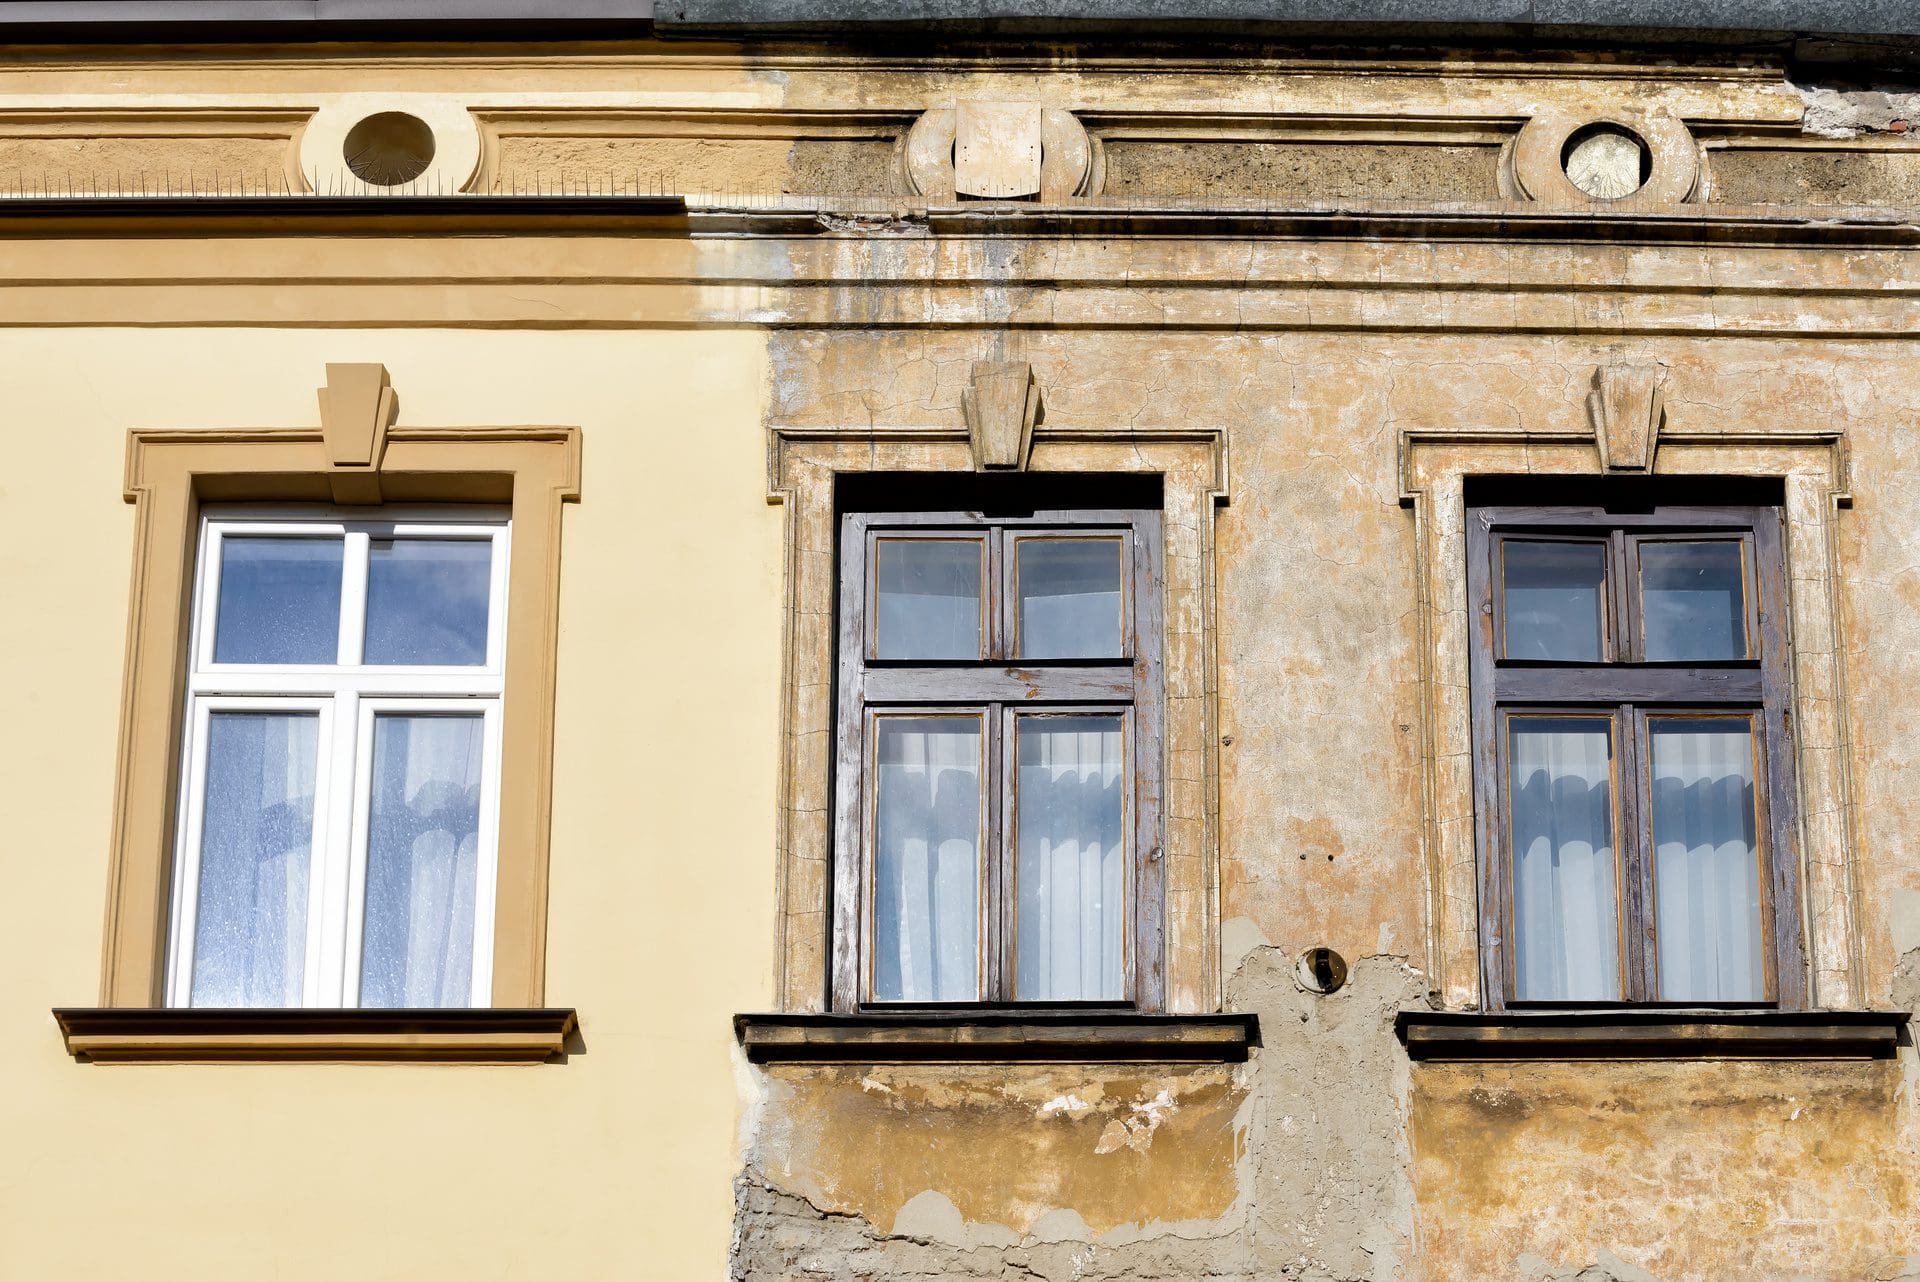 Fassadenrenovierung / Fassadensanierung | Vorher und nachher im Vergleich (© cameris / stock.adobe.com)